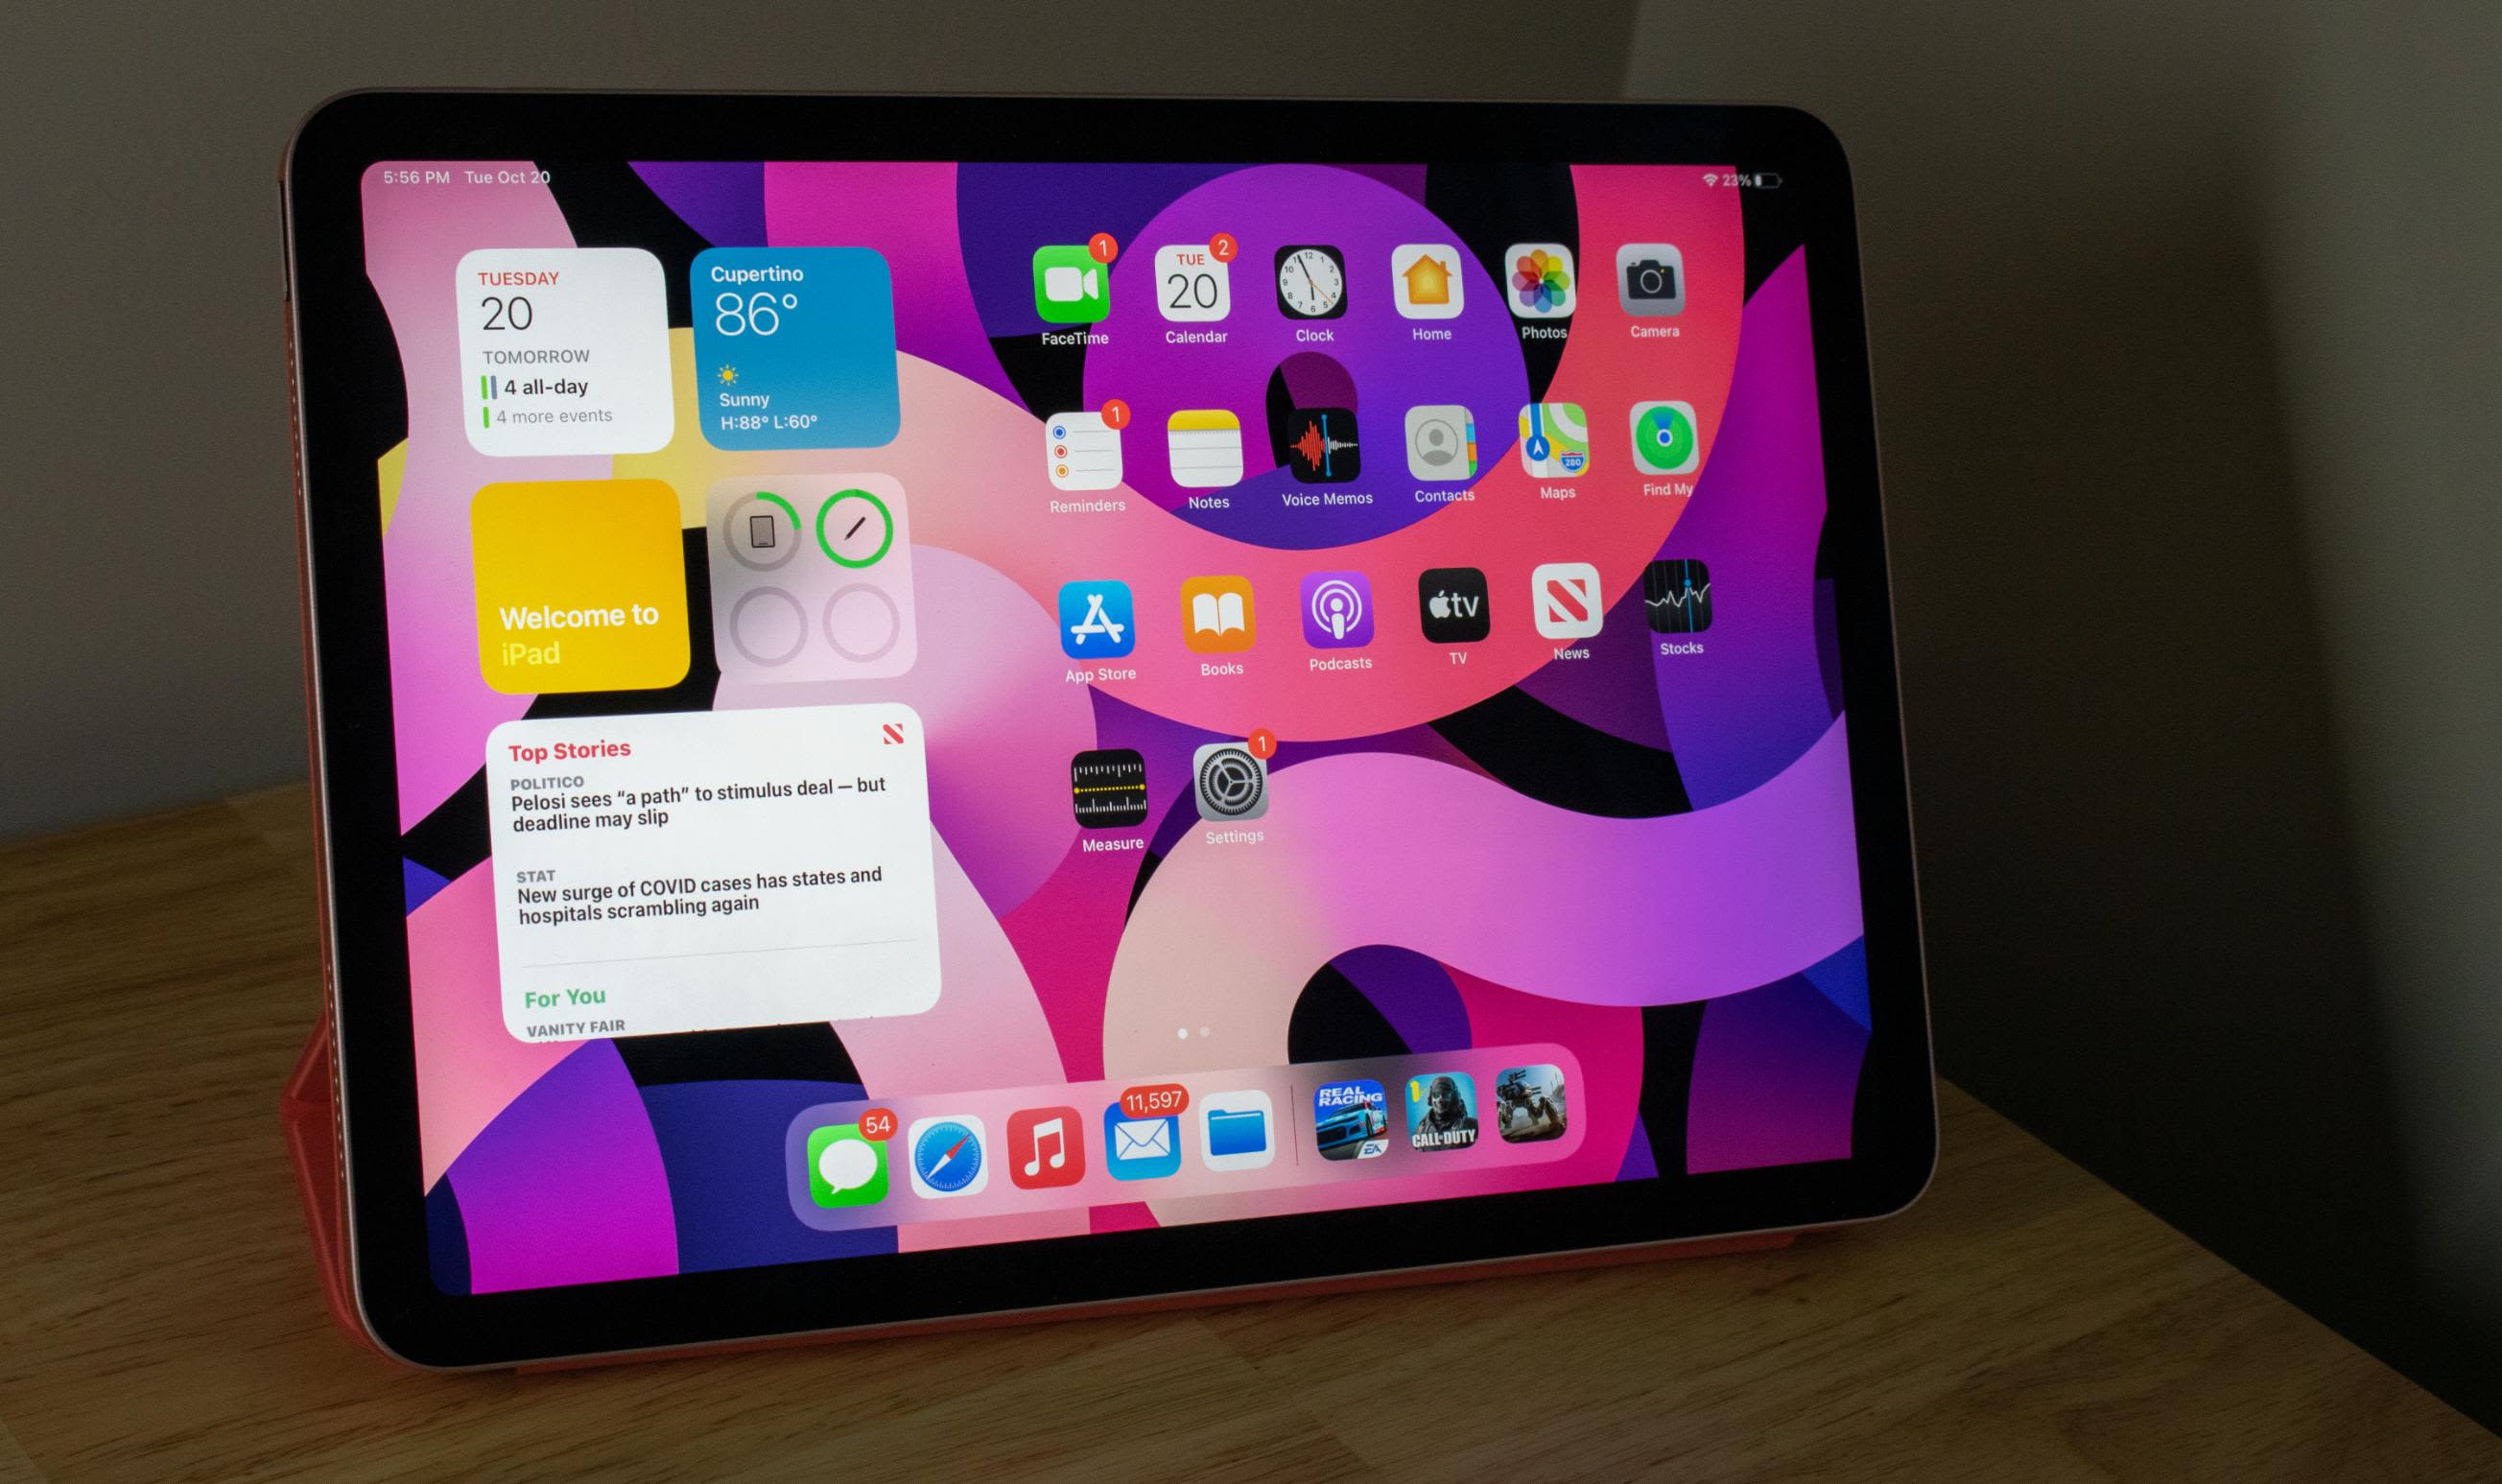 iPad Air 4 là một trong những chiếc máy tính bảng cao cấp của Apple với cấu hình mạnh mẽ và thiết kế đẹp mắt. Tuy nhiên, bạn có còn băn khoăn về sản phẩm này? Xem ngay đánh giá iPad Air 4 với những đánh giá tích cực từ người dùng đã sử dụng để tìm hiểu thêm về sản phẩm và có được quyết định đúng đắn nhất.